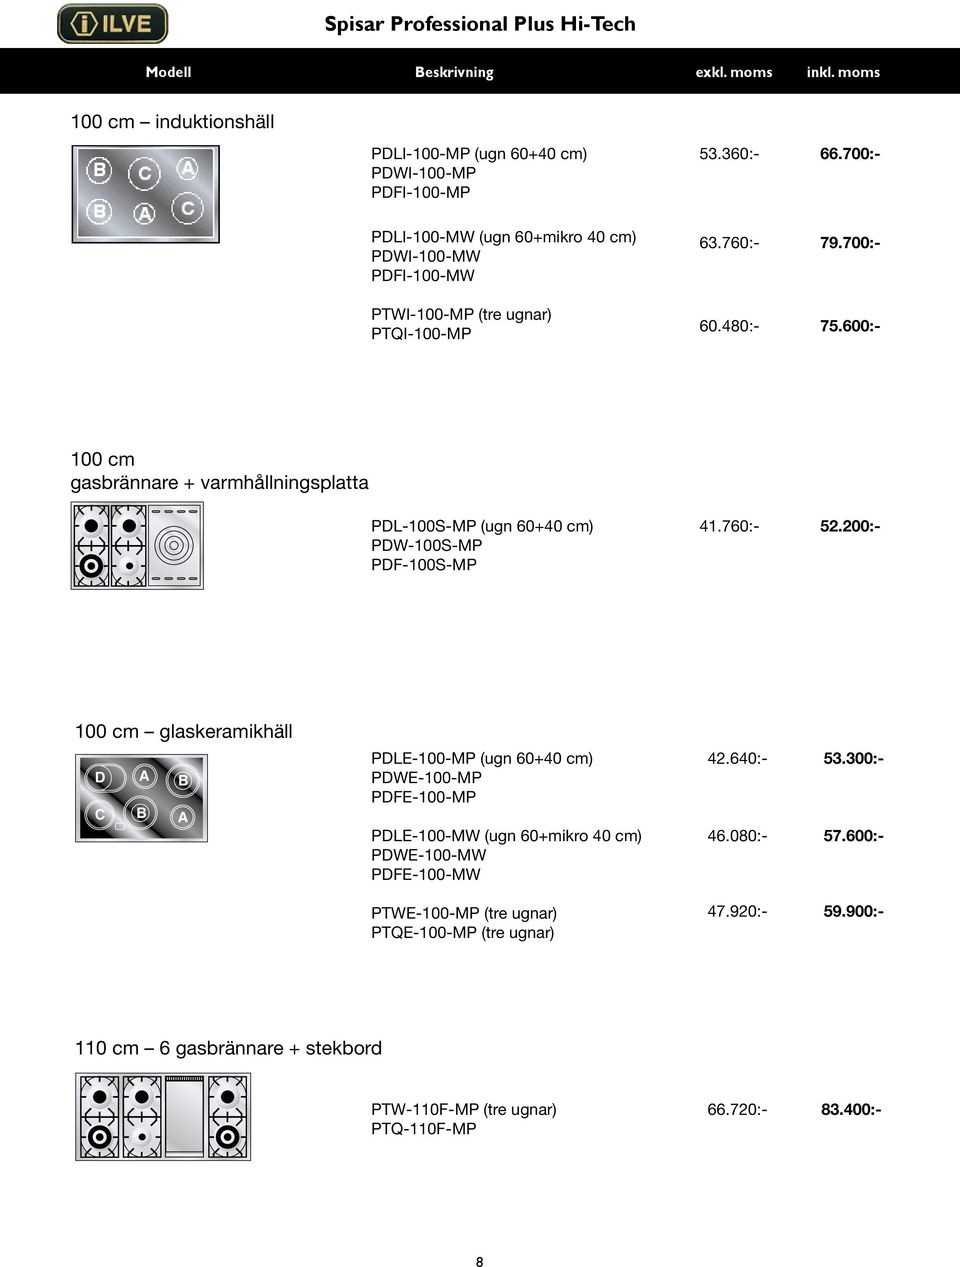 600:- 100 cm gasbrännare + varmhållningsplatta PDL-100S-MP (ugn 60+40 cm) PDW-100S-MP PDF-100S-MP 41.760:- 52.